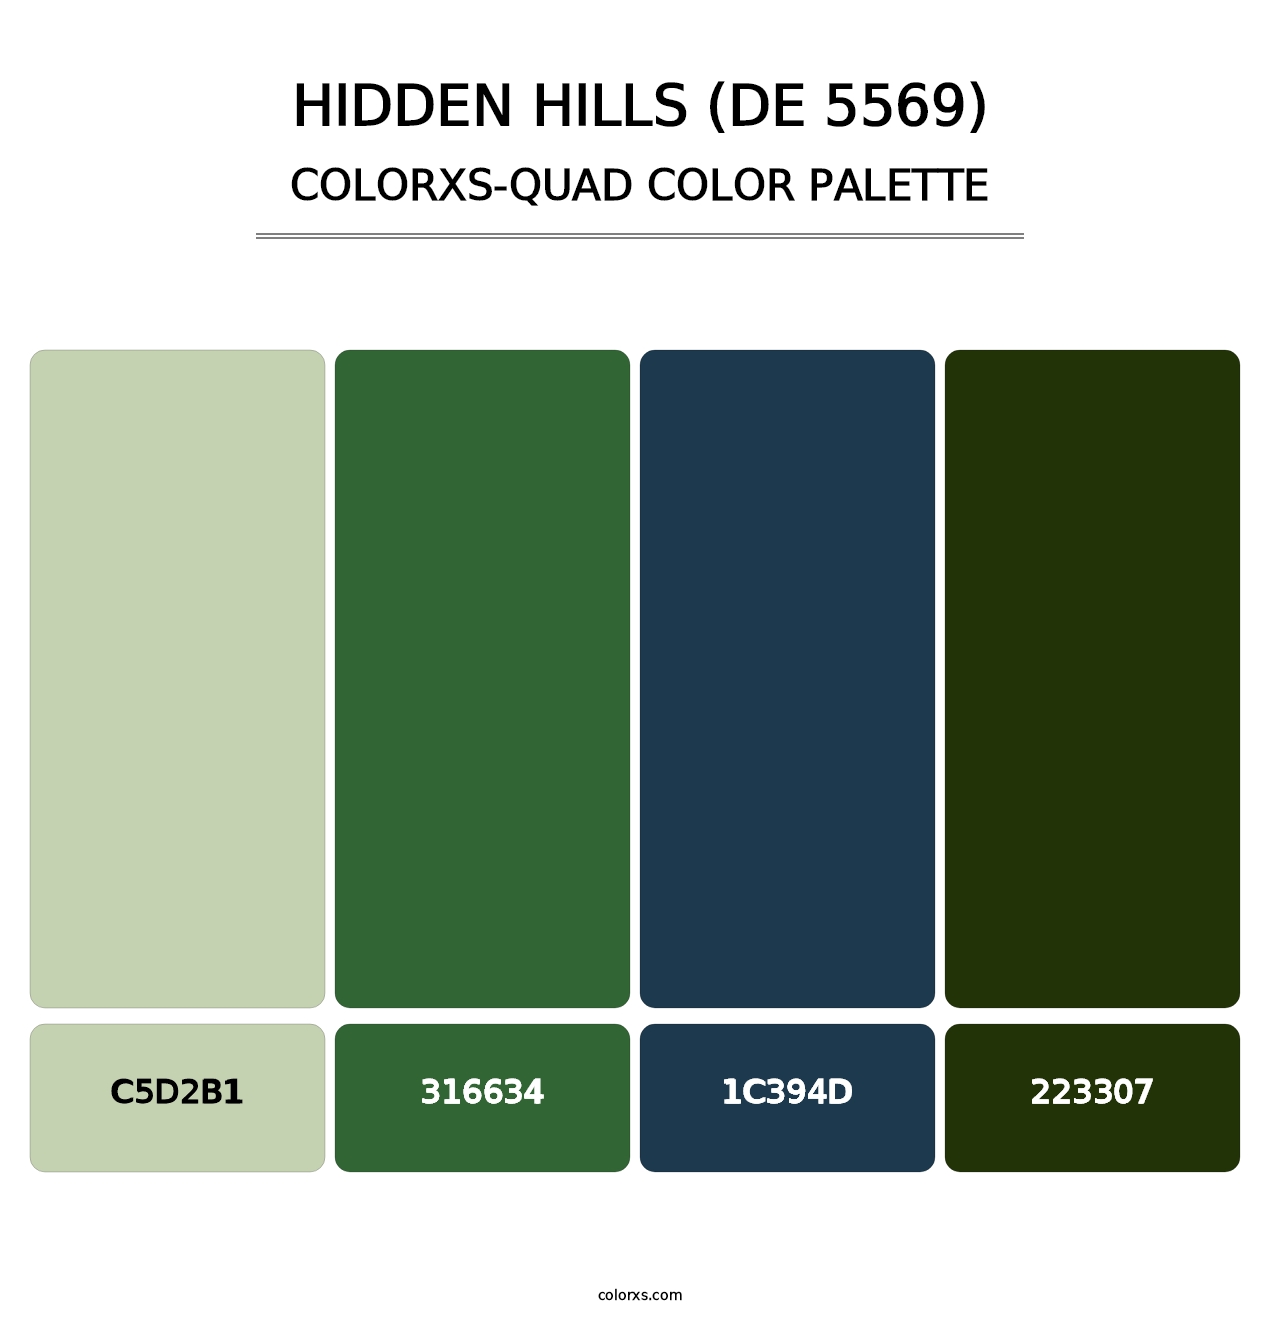 Hidden Hills (DE 5569) - Colorxs Quad Palette